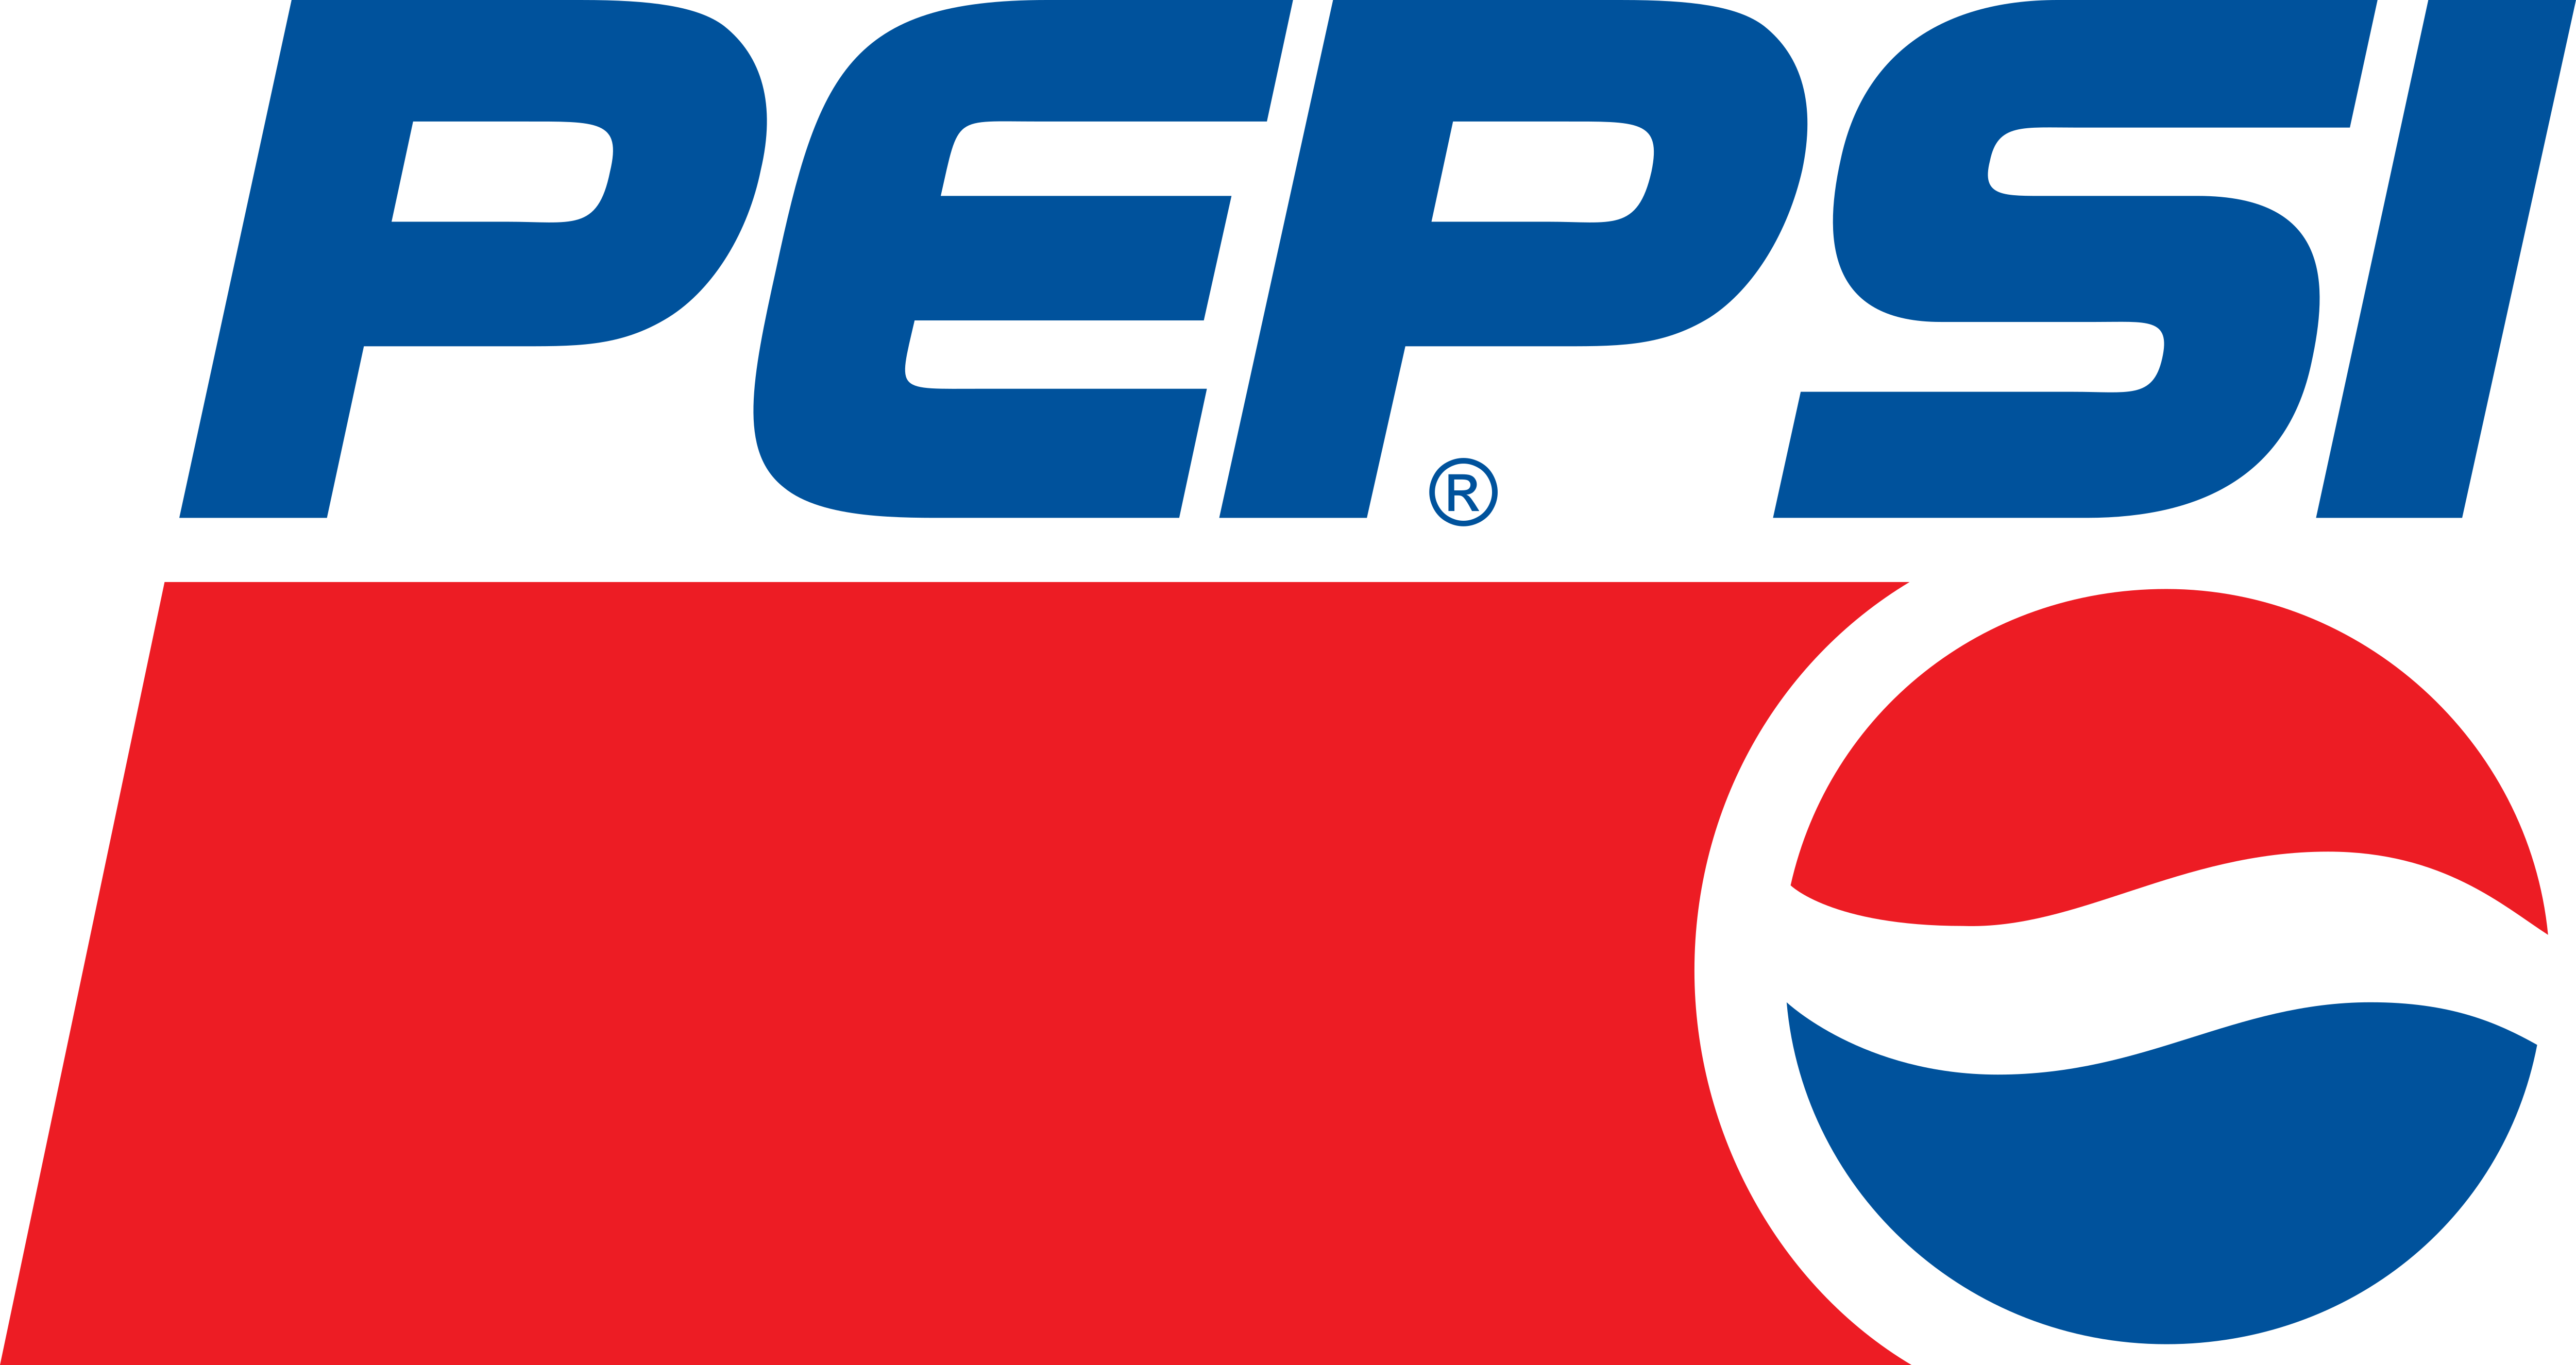 Pepsi Logo rund Blechschild Flach Neu aus USA 30x30cm mit Bset 